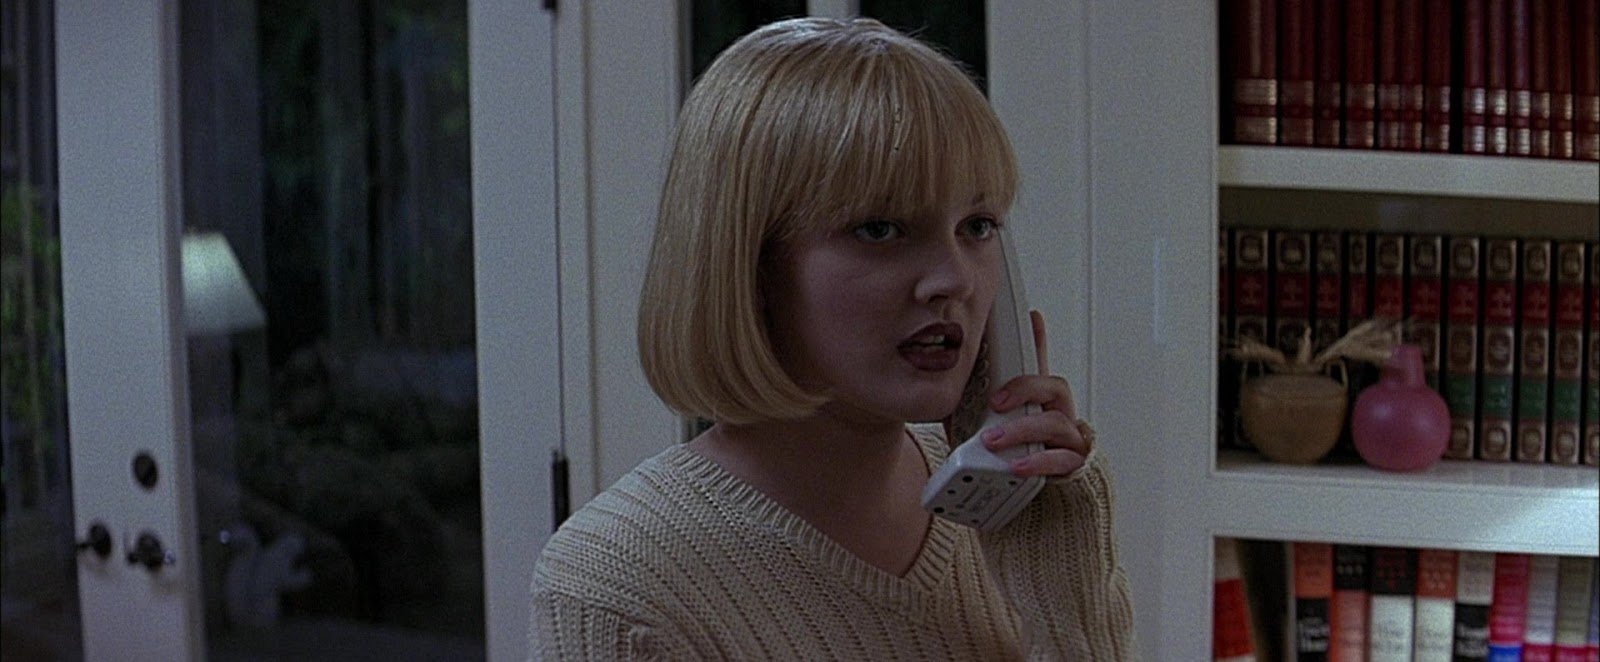 Scream : Drew Barrymore reçoit un nouvel appel de Ghostface dans une vidéo délirante